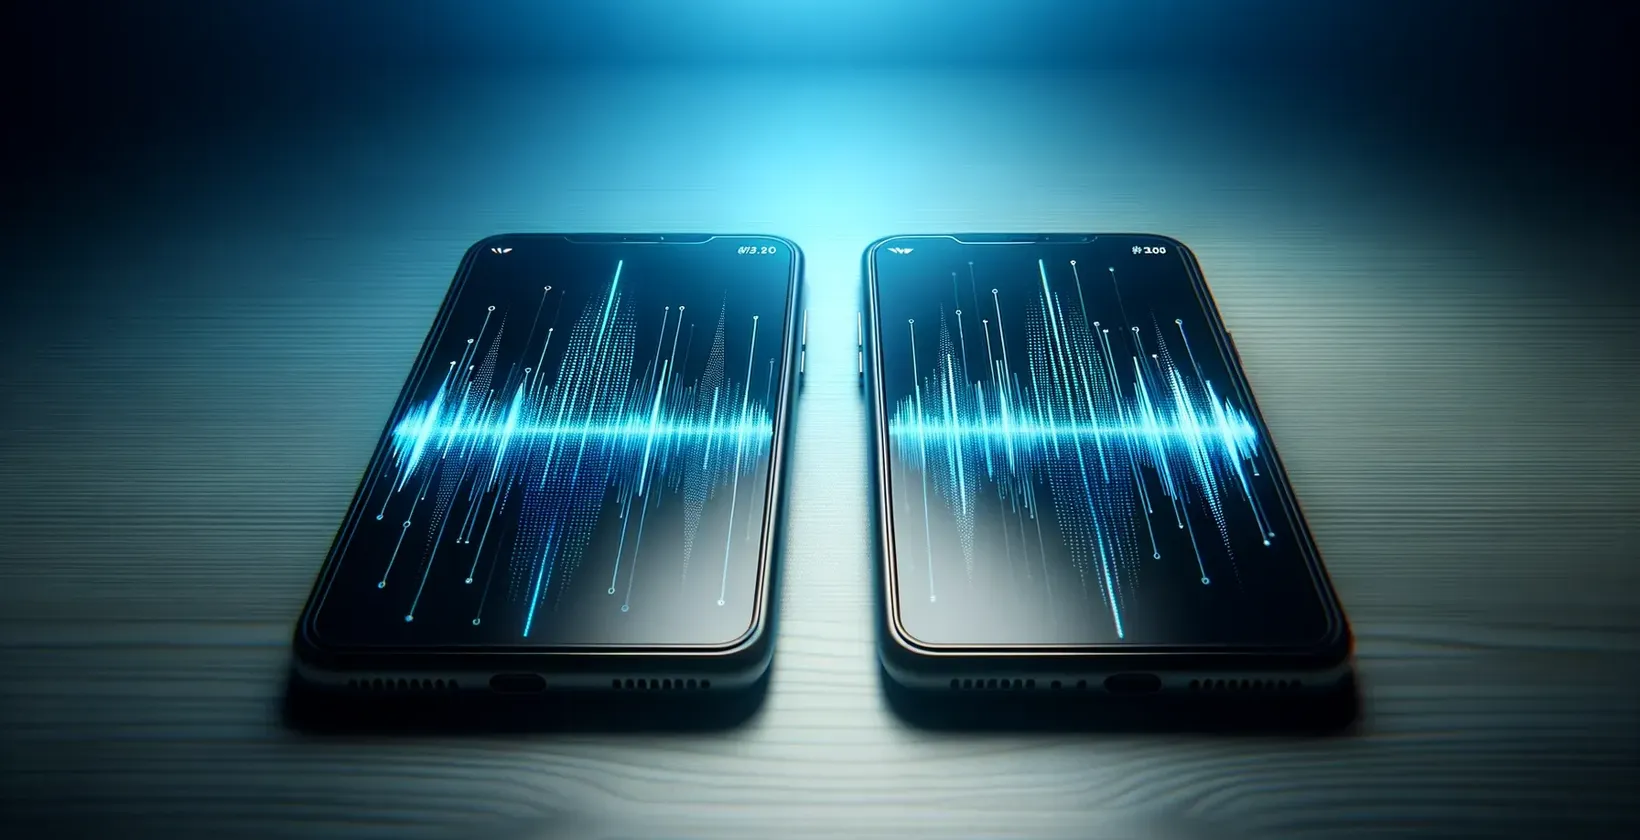 Pametni telefoni koji prikazuju dinamičke digitalne talasne oblike, predstavljaju mogućnosti softvera za transkripciju